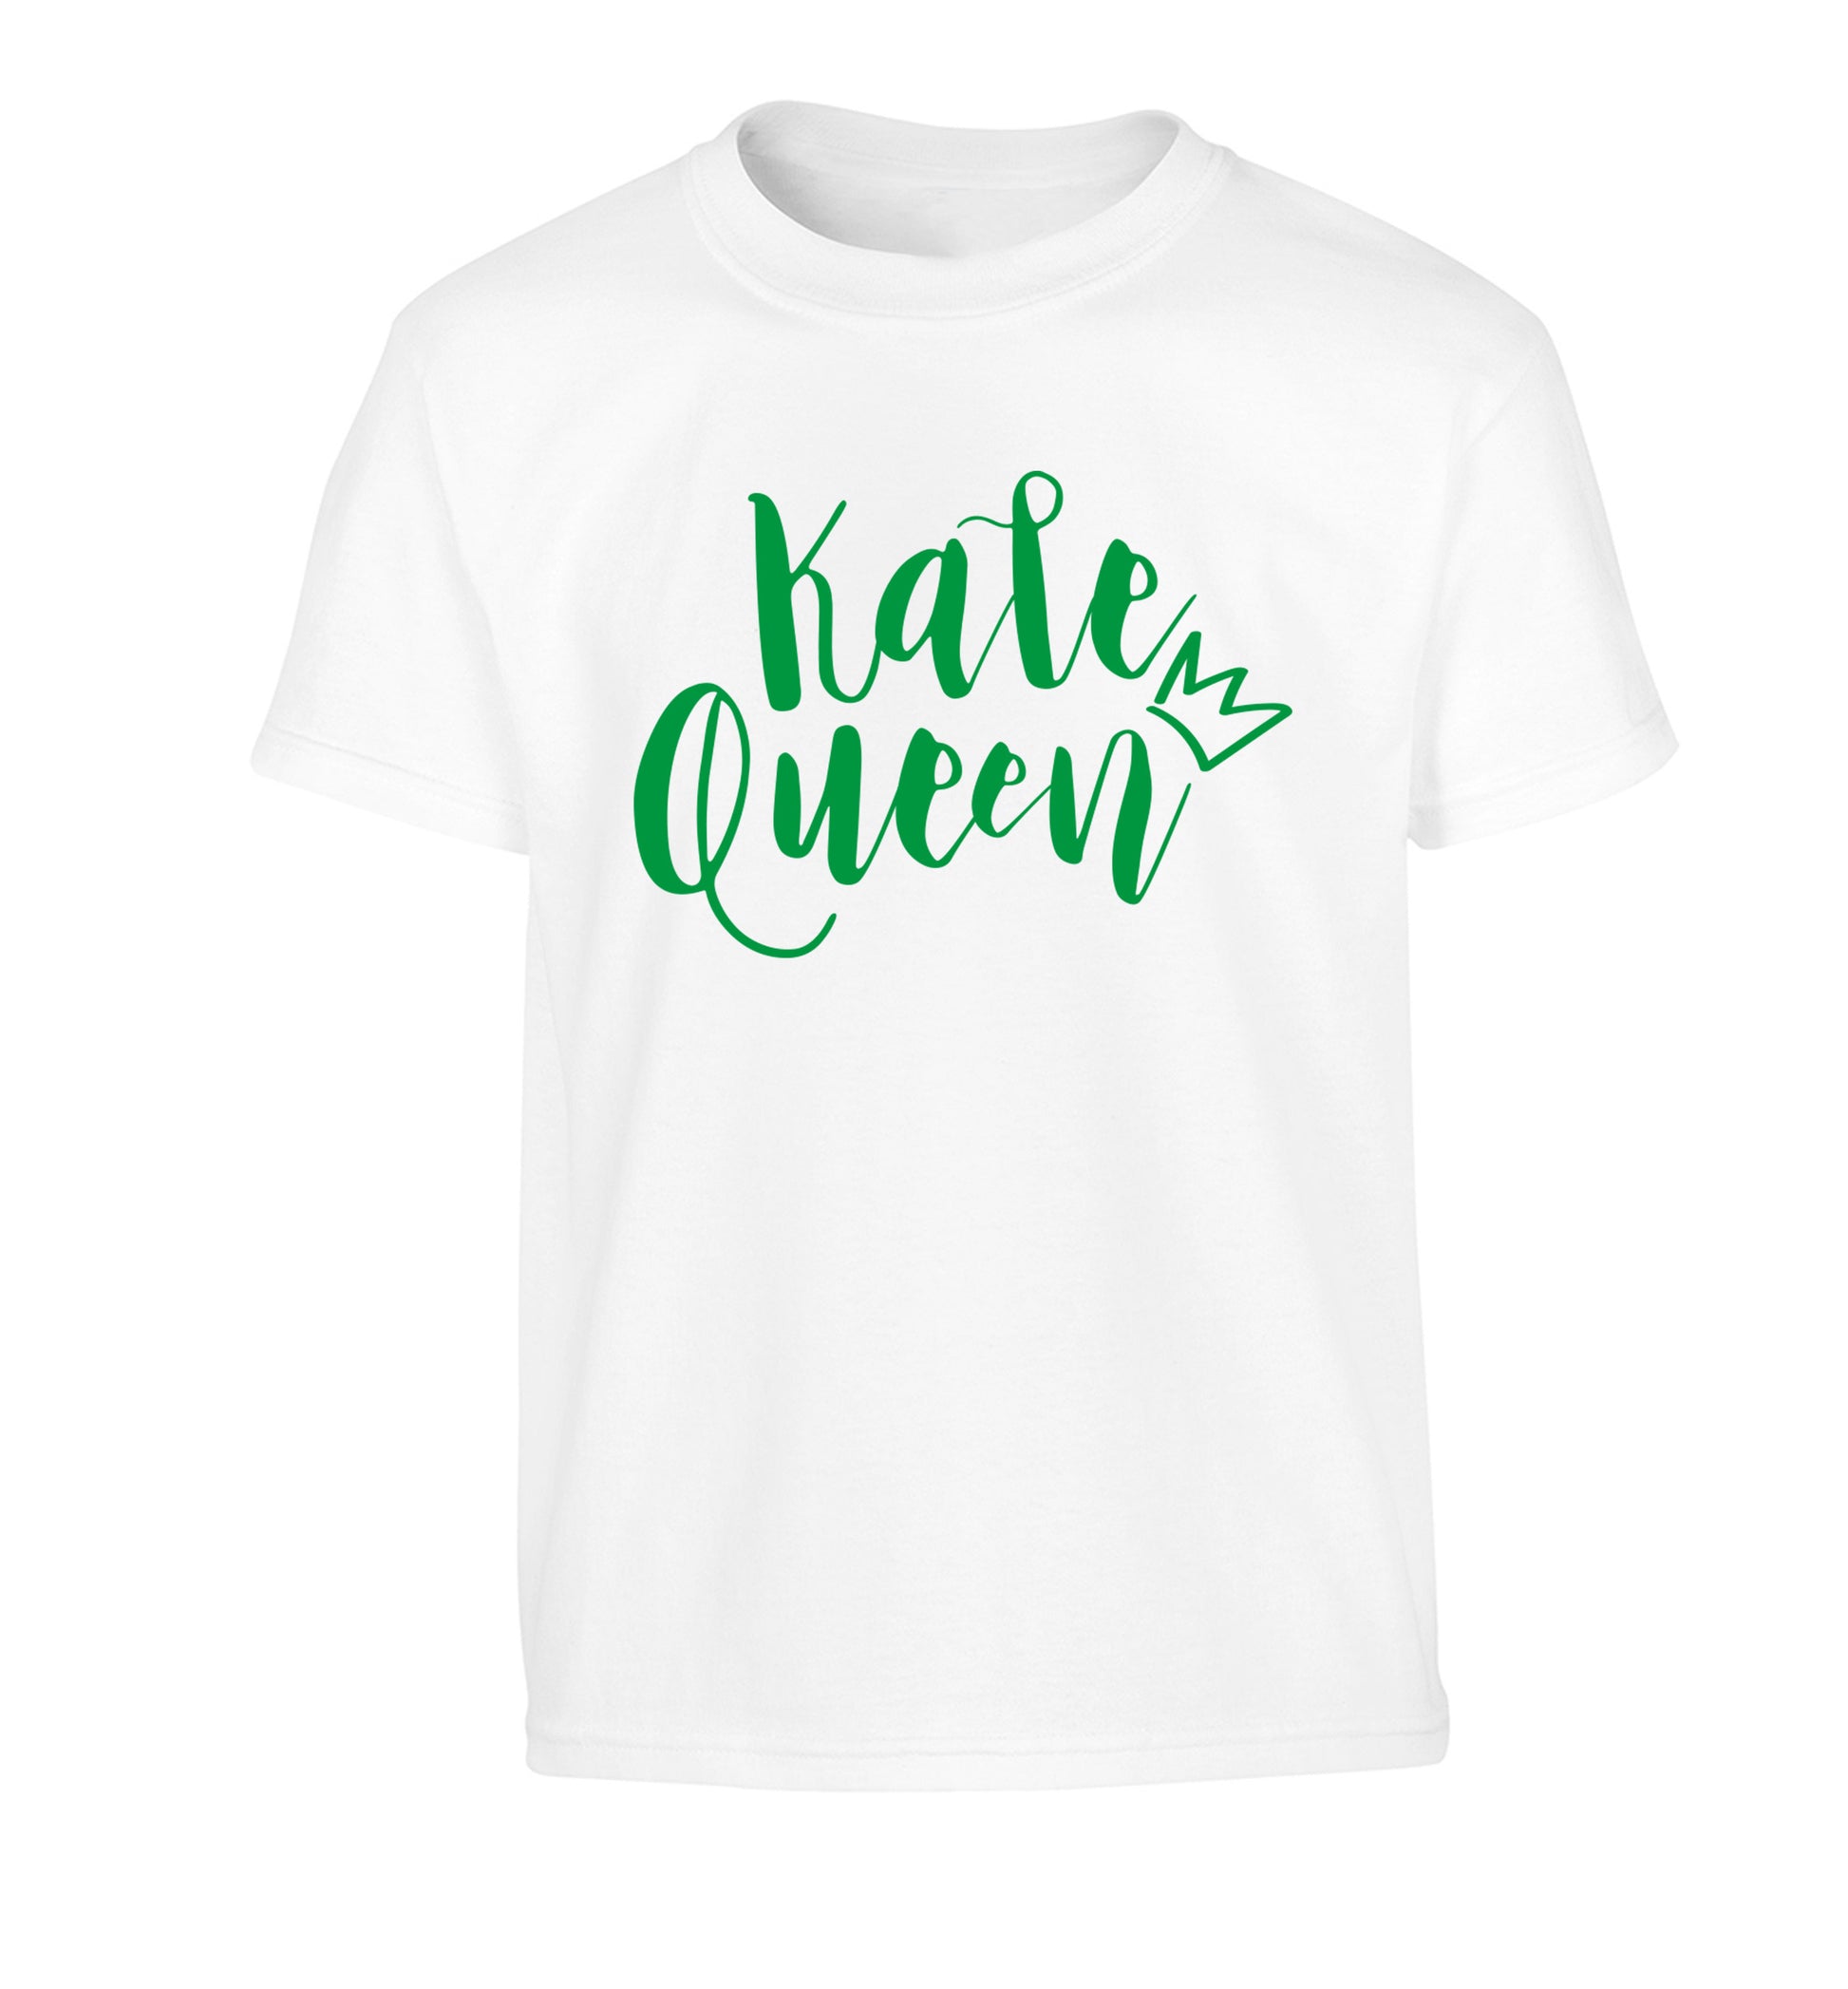 Kale Queen Children's white Tshirt 12-14 Years